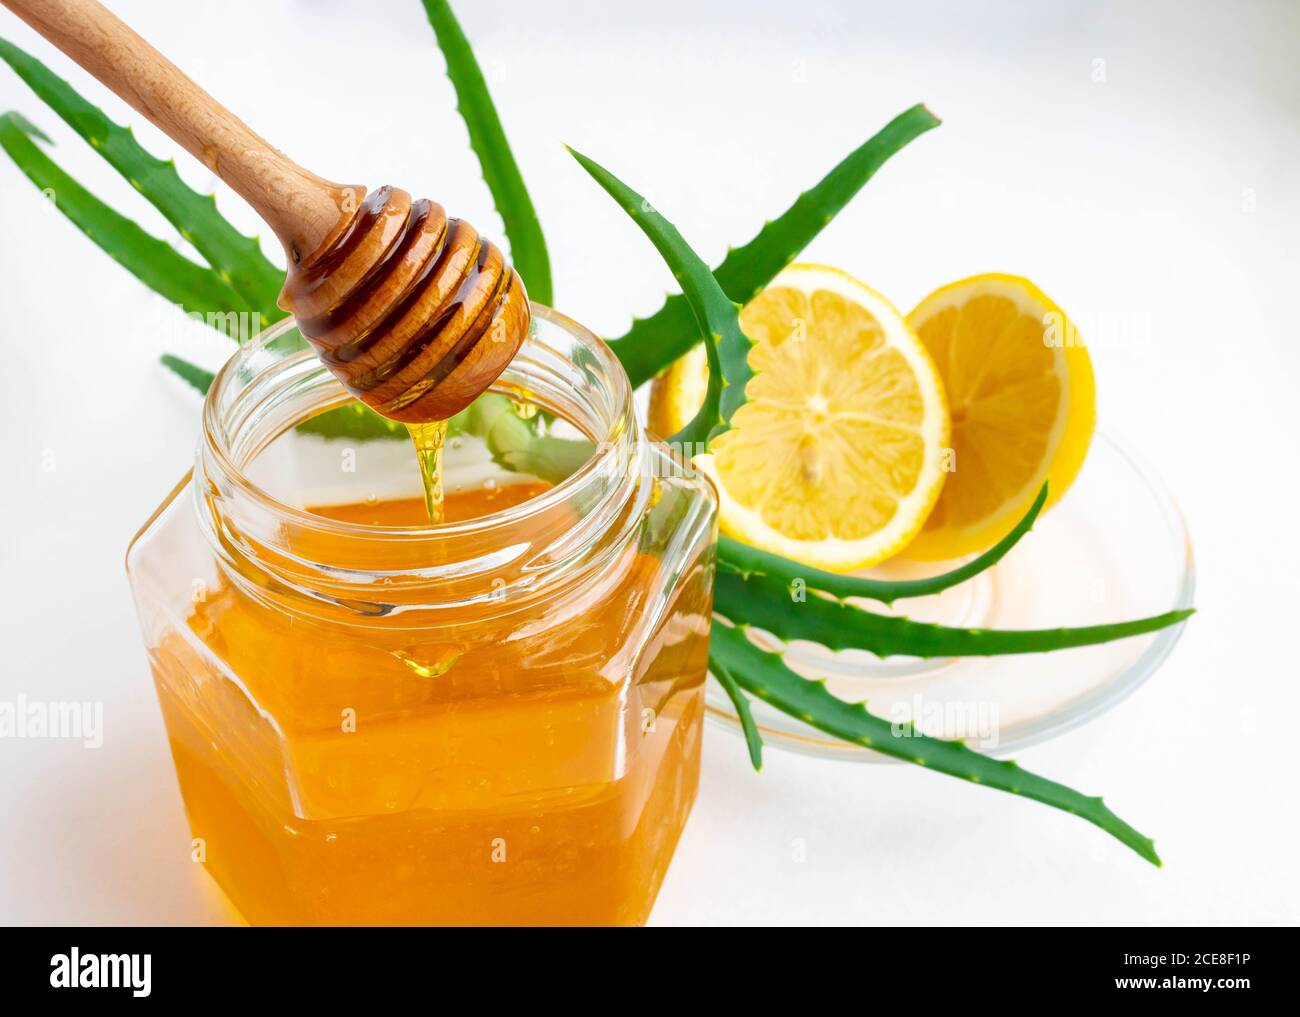 Nützliche Inhaltsstoffe zur Stärkung des Immunsystems auf weißem Hintergrund.Honig im Glas, Zitrone und Aloe Vera. Leerzeichen für Text Stockfoto